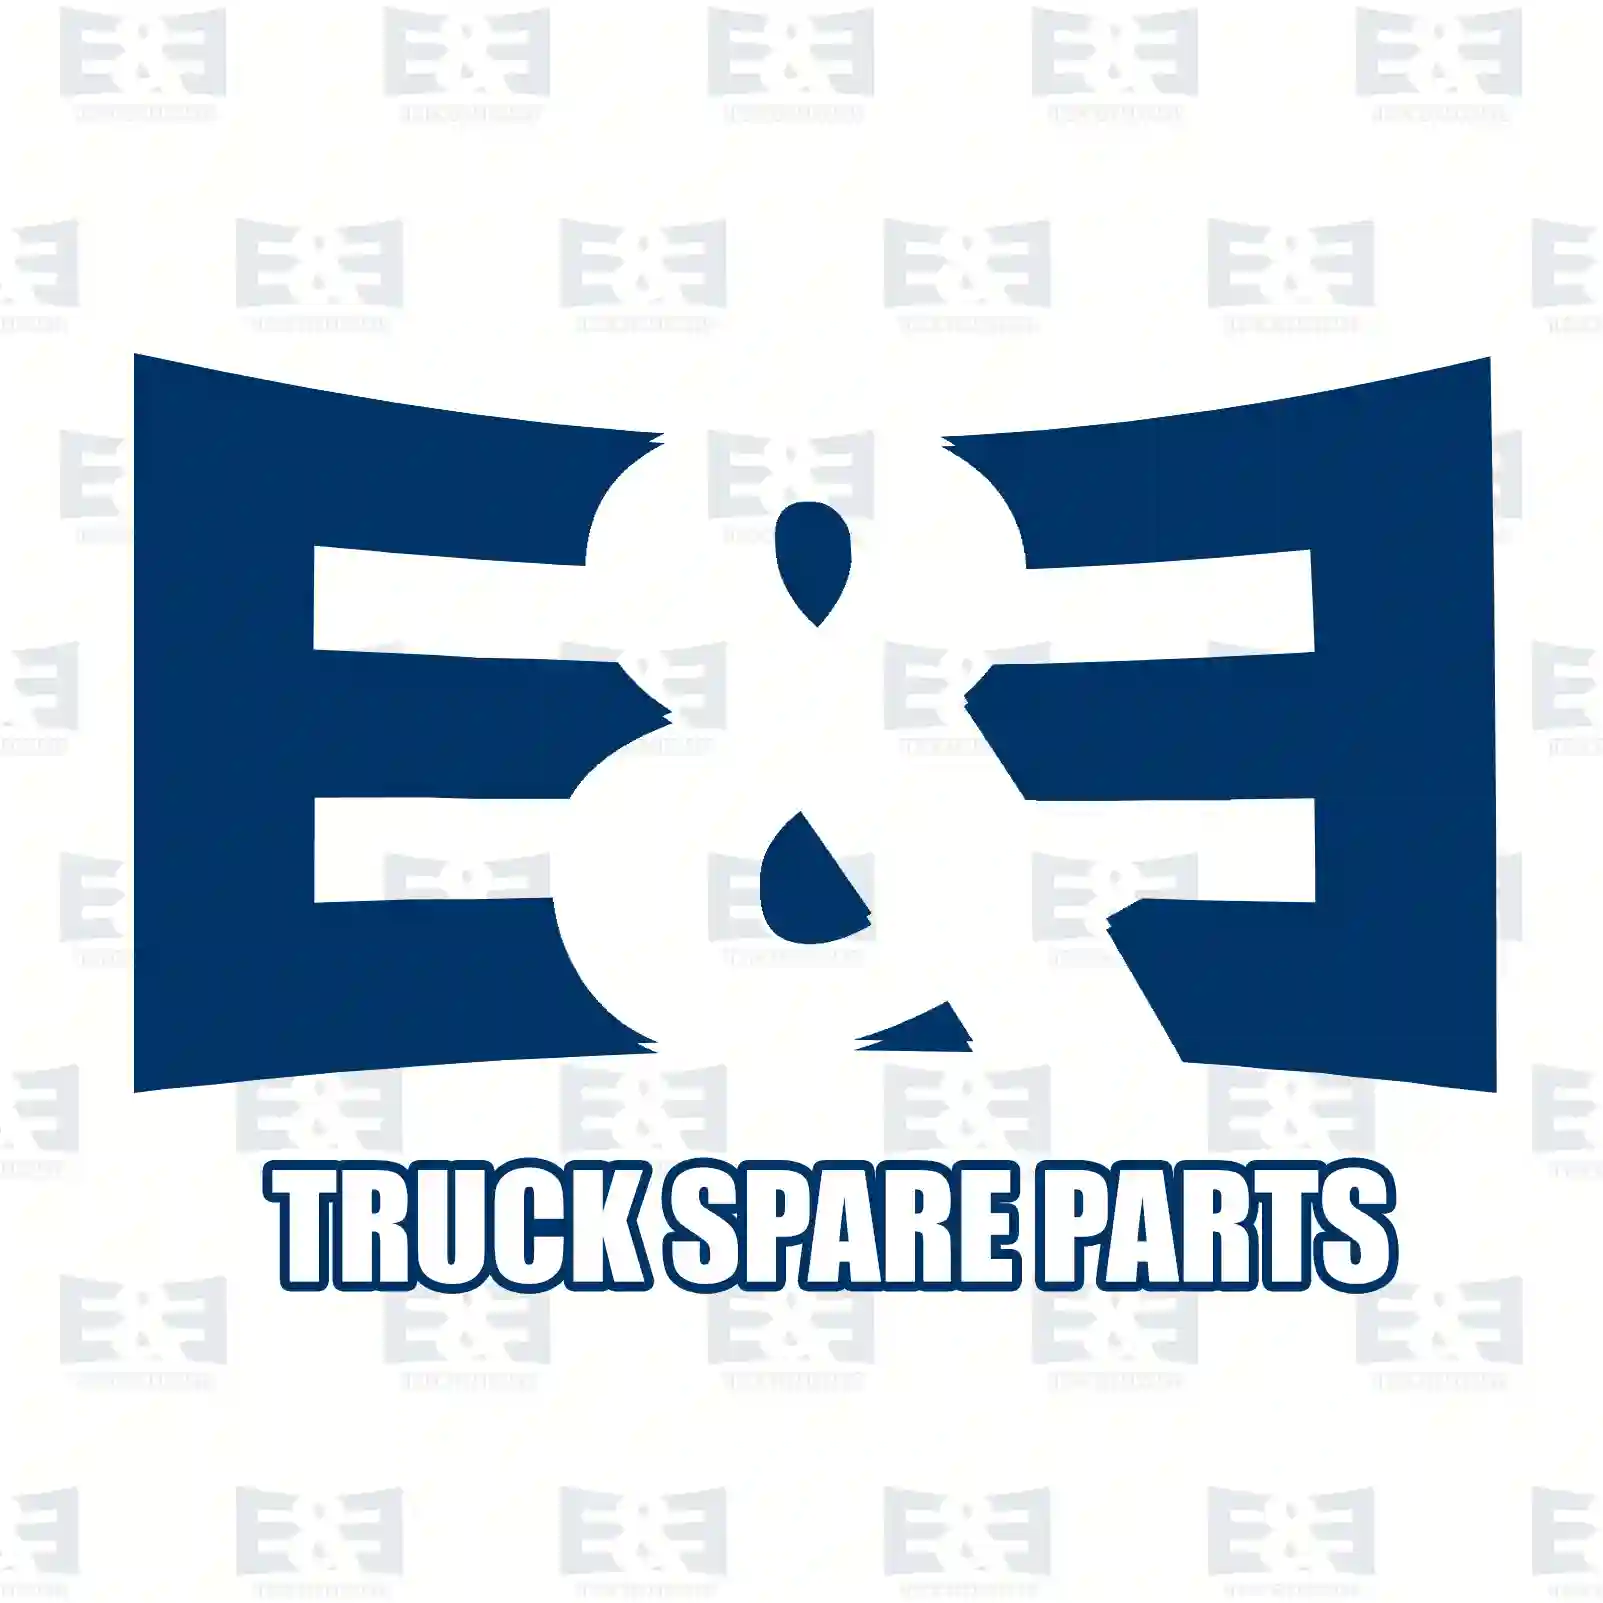 Air dryer, 2E2294225, 5010422343, ZG50054-0008, ||  2E2294225 E&E Truck Spare Parts | Truck Spare Parts, Auotomotive Spare Parts Air dryer, 2E2294225, 5010422343, ZG50054-0008, ||  2E2294225 E&E Truck Spare Parts | Truck Spare Parts, Auotomotive Spare Parts